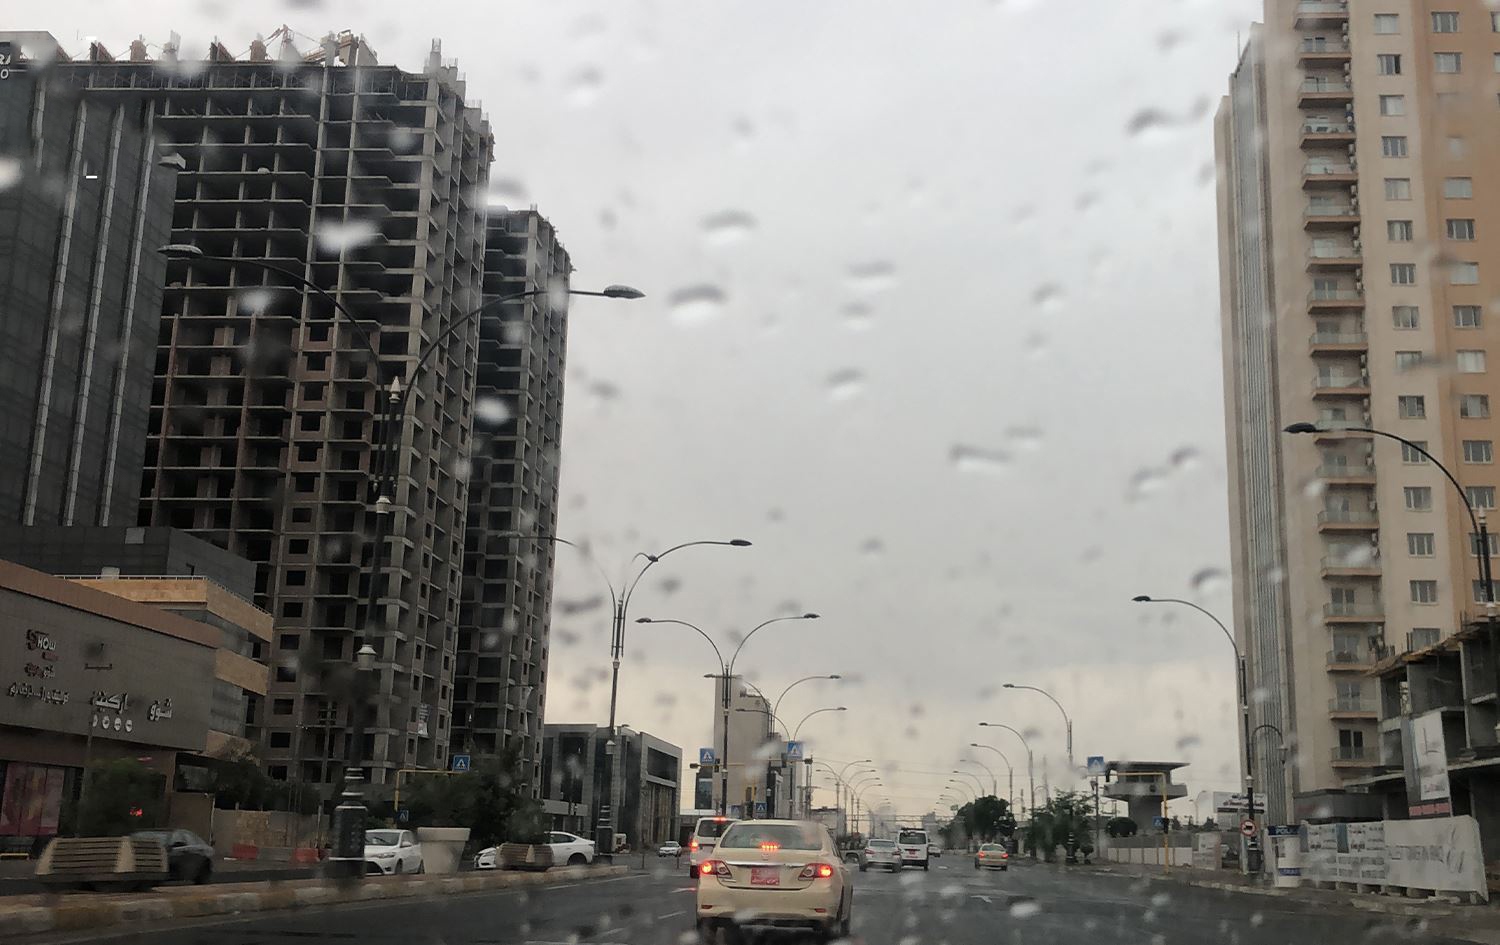 محافظة أربيل تعطل الدوام الرسمي يوم غد الأربعاء بسبب الأمطار